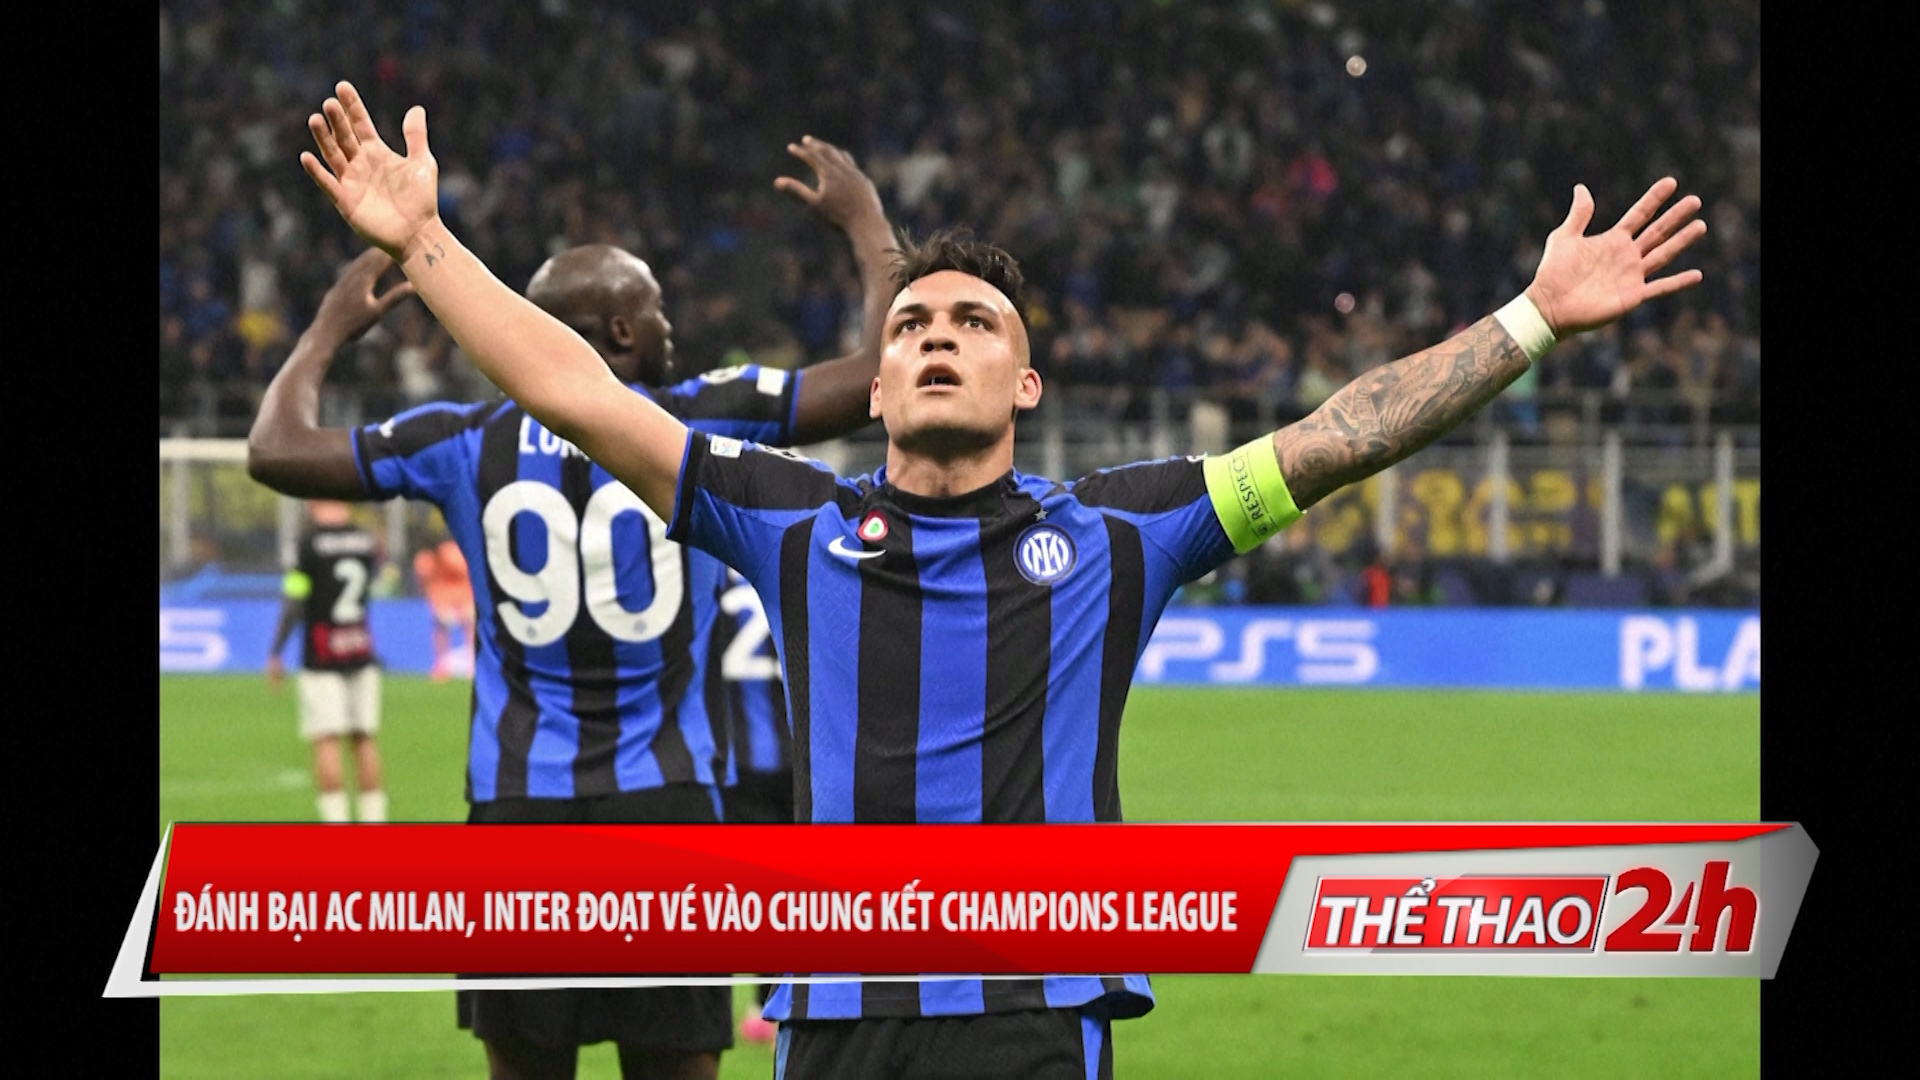 Đánh bại Ac Milan – Inter đoạt vé vào chung kết Champions League